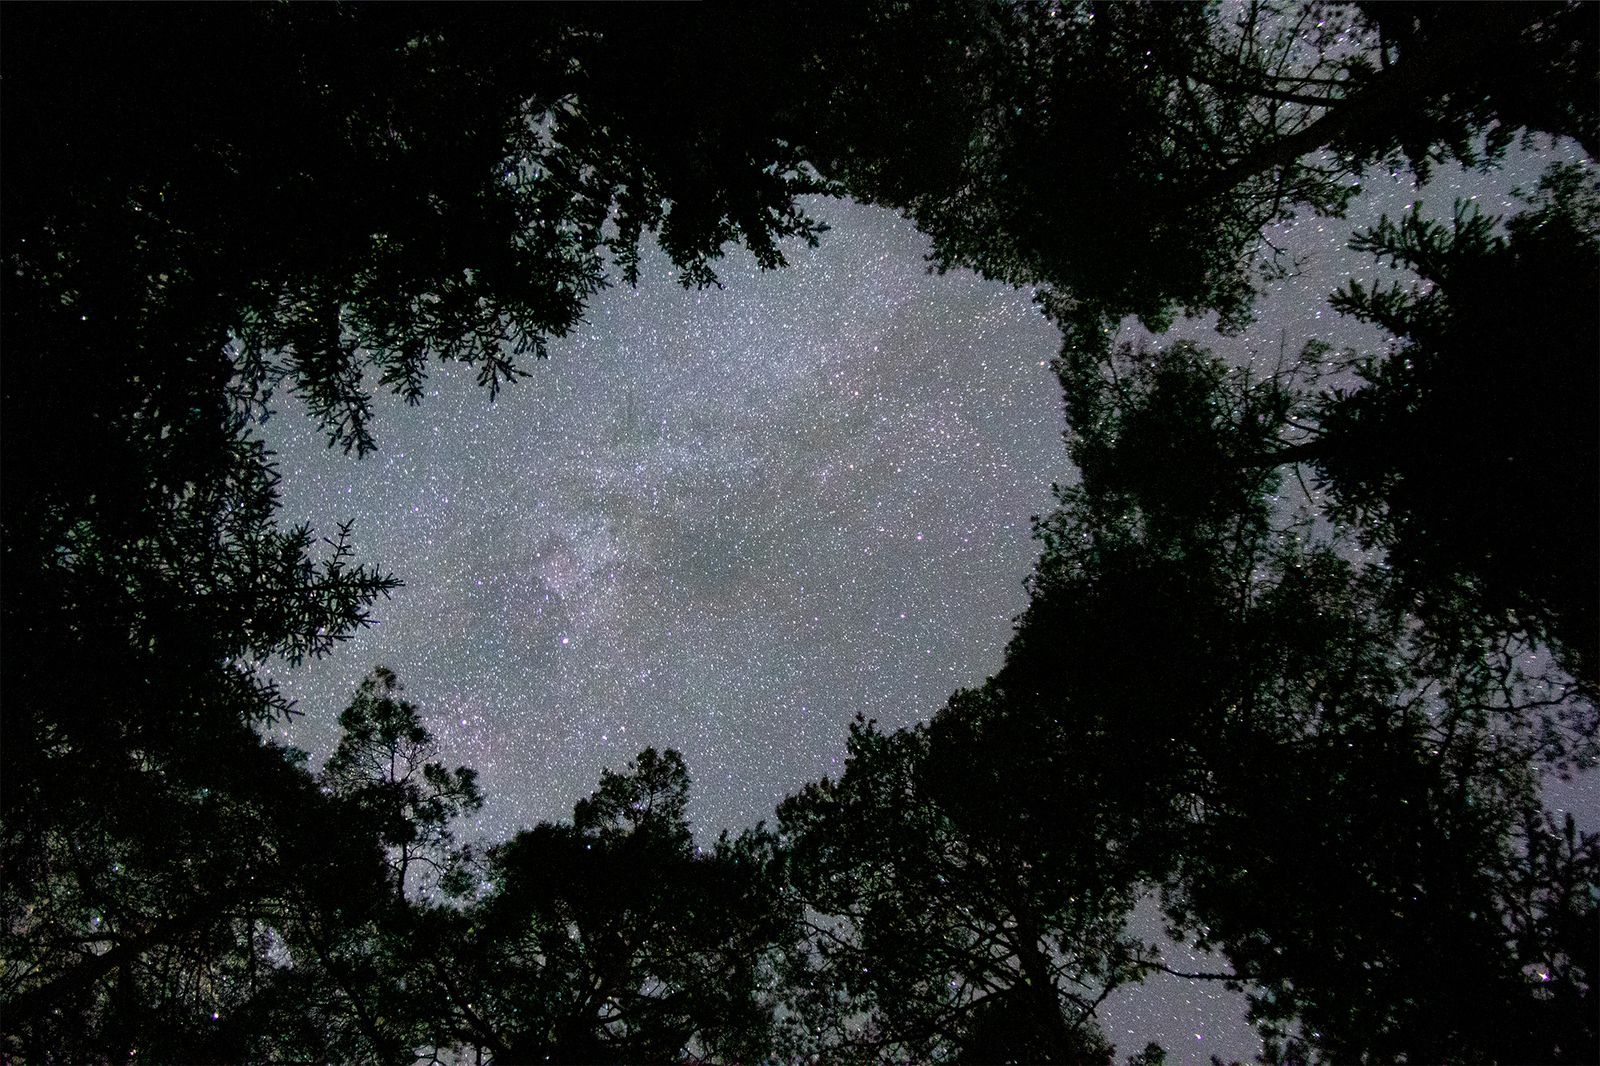 Linnunrata katsottuna ylöspäin keskellä metsää, puut ympäröivät tähtitaivasta